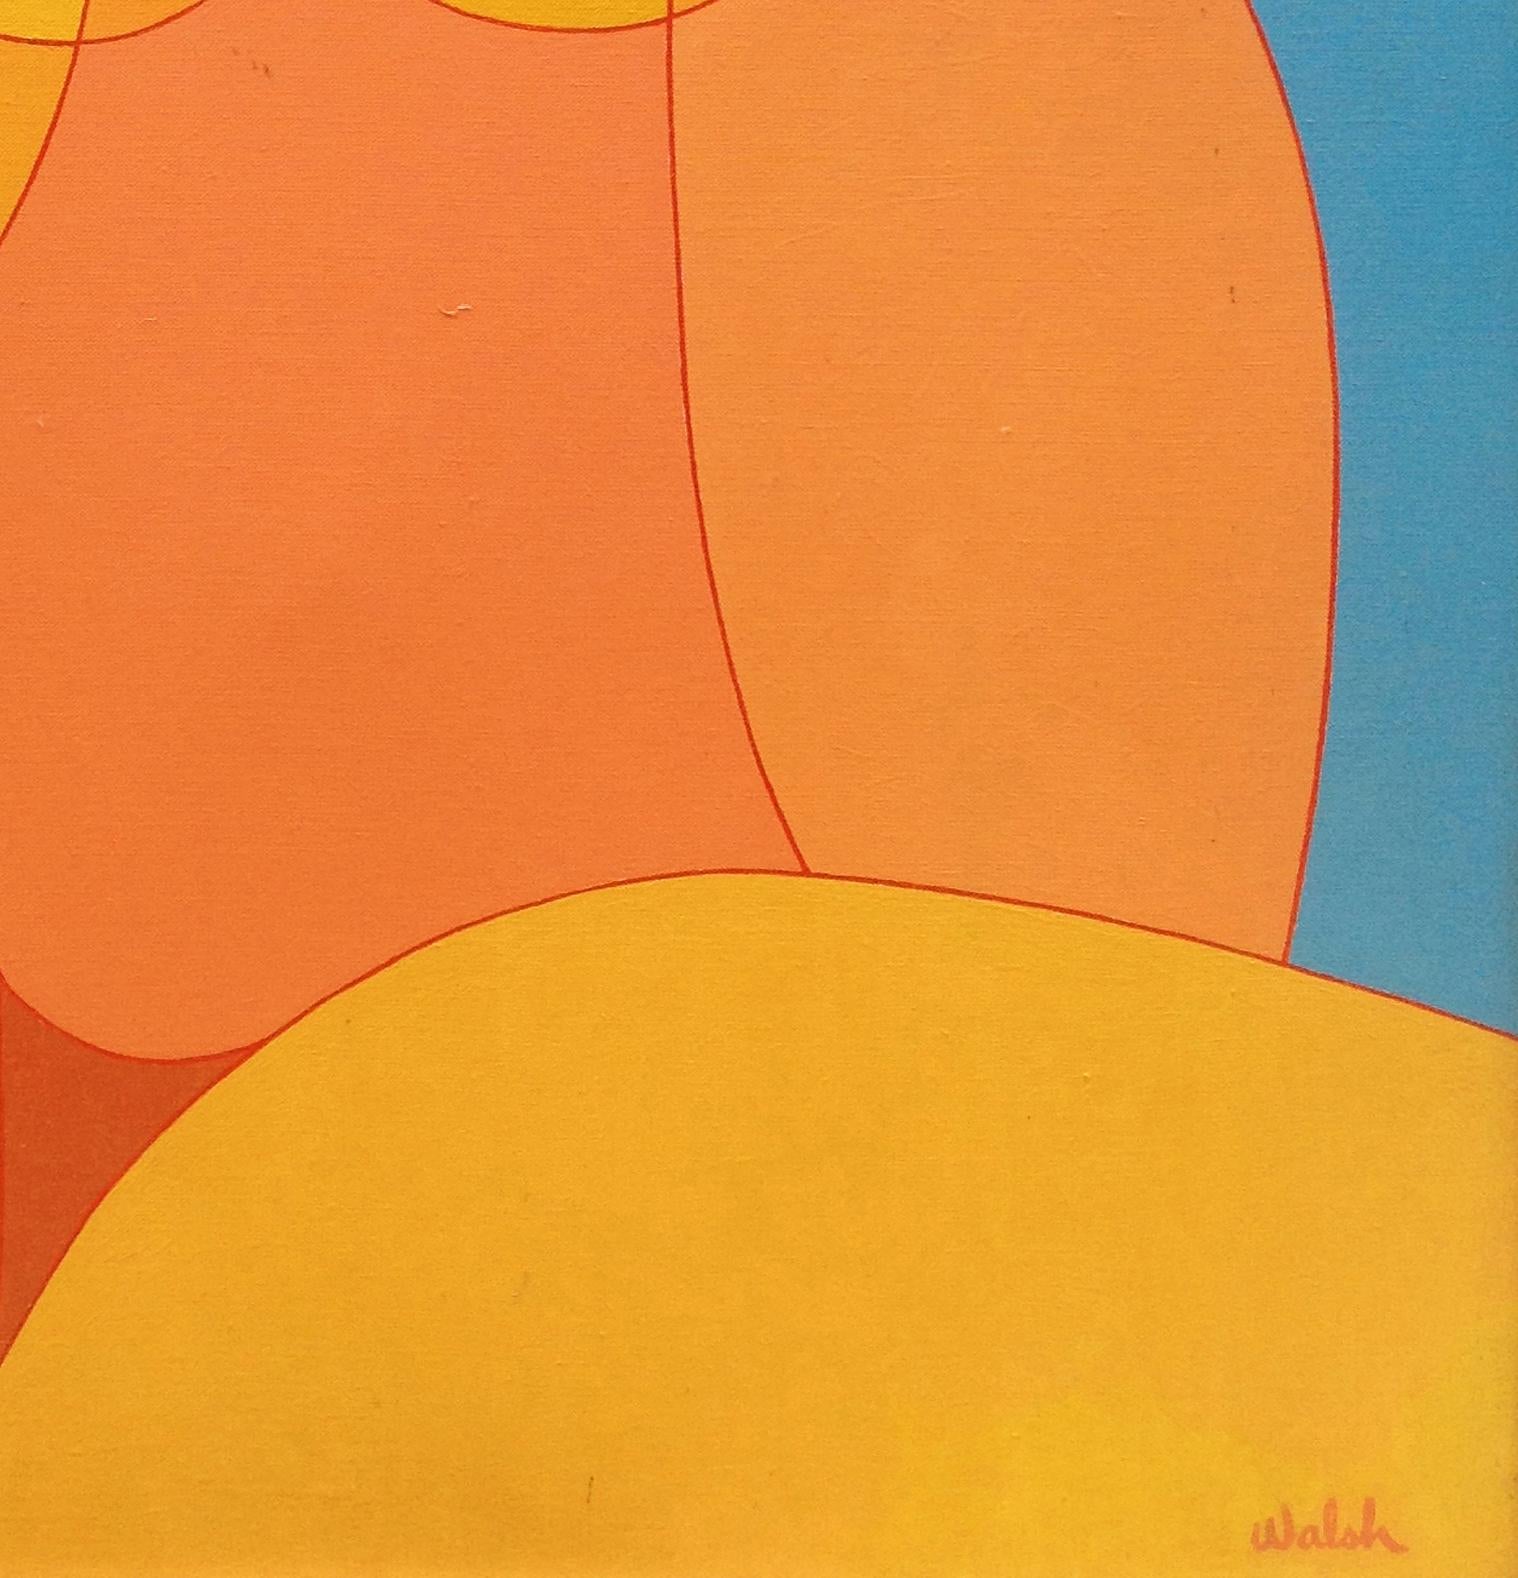 Goldene Dame
Wird gerahmt geliefert (weiß) siehe Bild
Neokubismus

Über den Künstler:
Kenneth B. Walsh (1922-1980) 
In den 1950er Jahren kam Kenneth Bonar Walsh aus New York City nach Montauk, um Meereslandschaften zu malen, Fische zu fangen, die